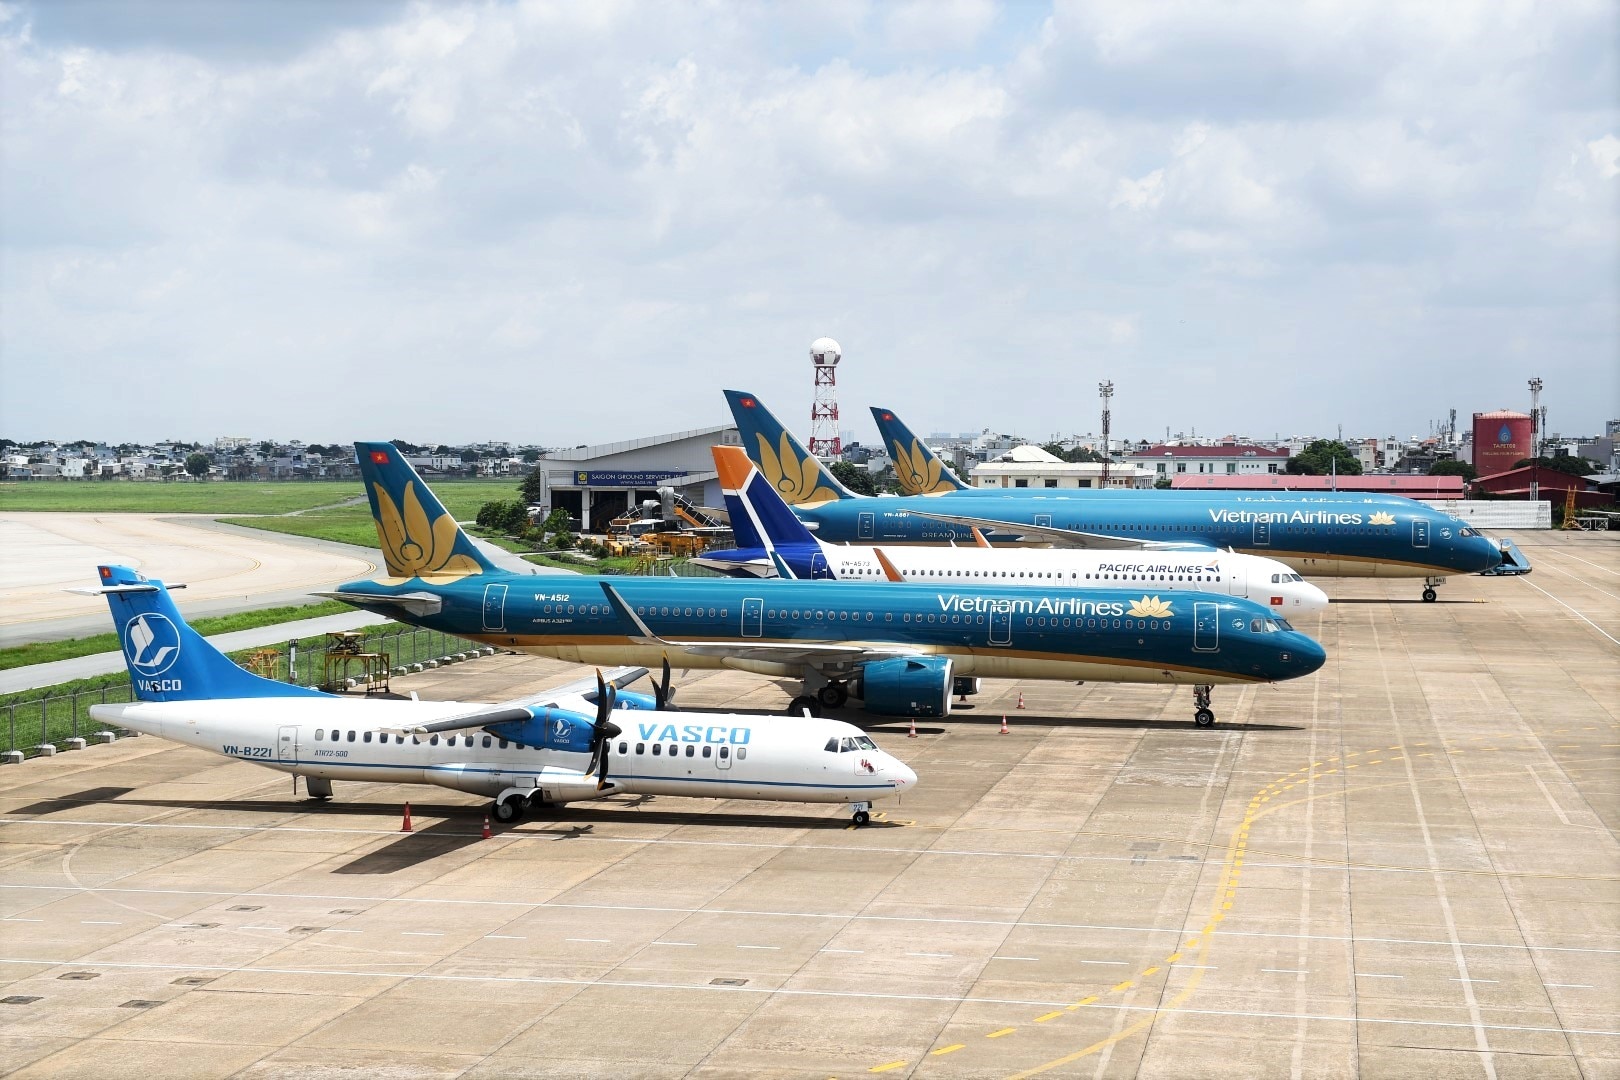 Pacific Airlines khai thác hàng ngày các đường bay giữa Tp Hồ Chí Minh và Hà Nội, Đà Nẵng, Chu Lai với tổng số 6-8 chuyến bay từ ngày 26/6